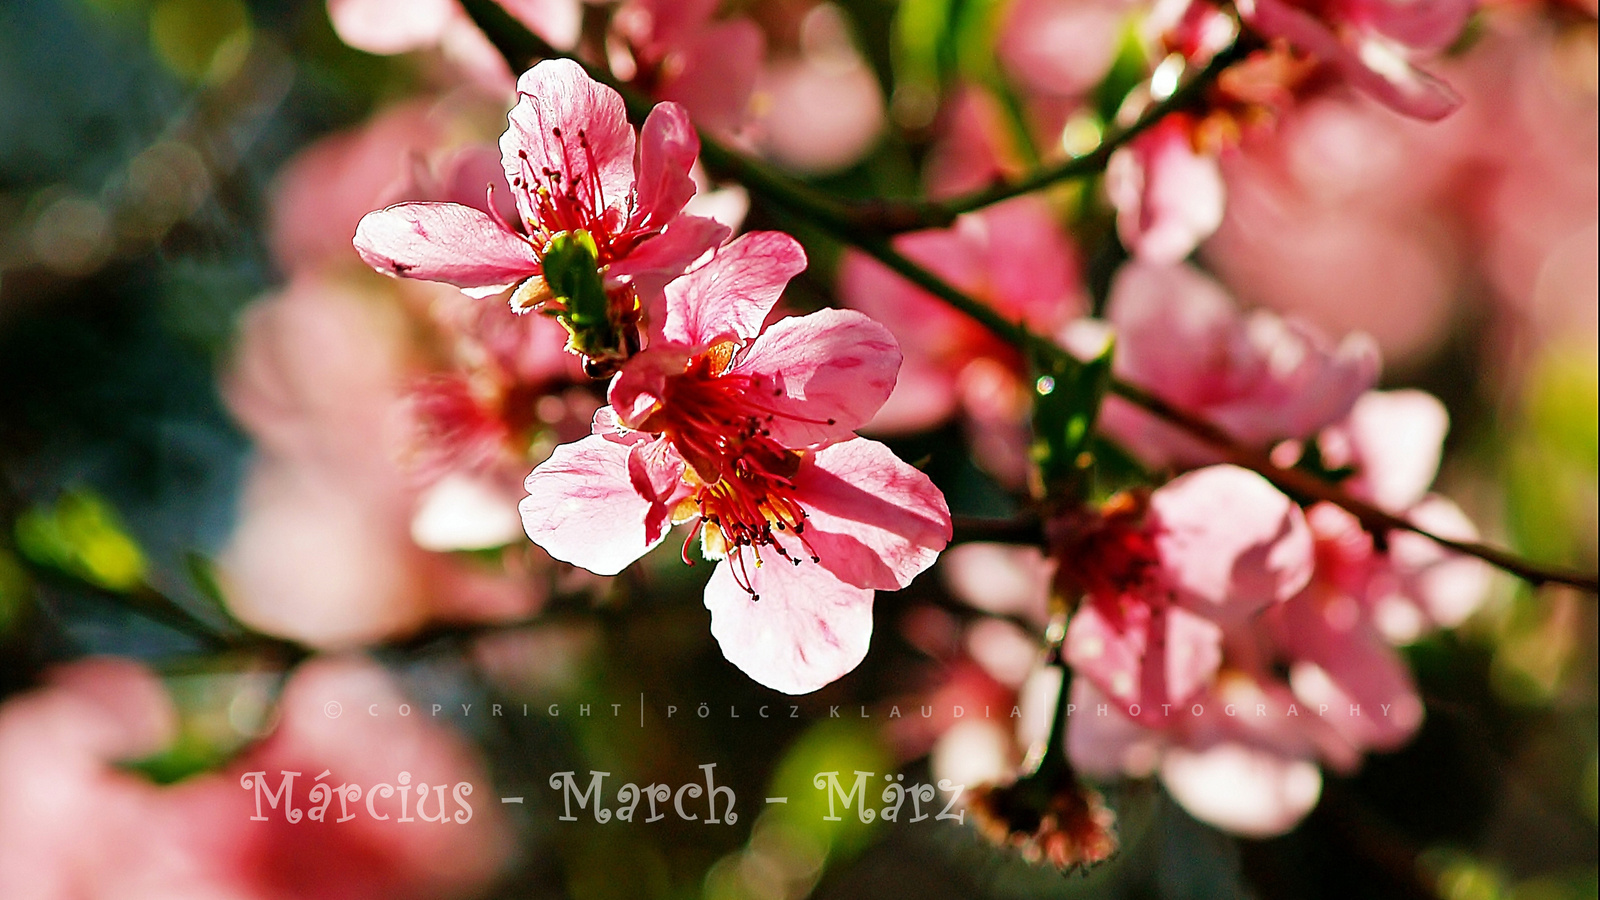 Tavaszváró - március (12)